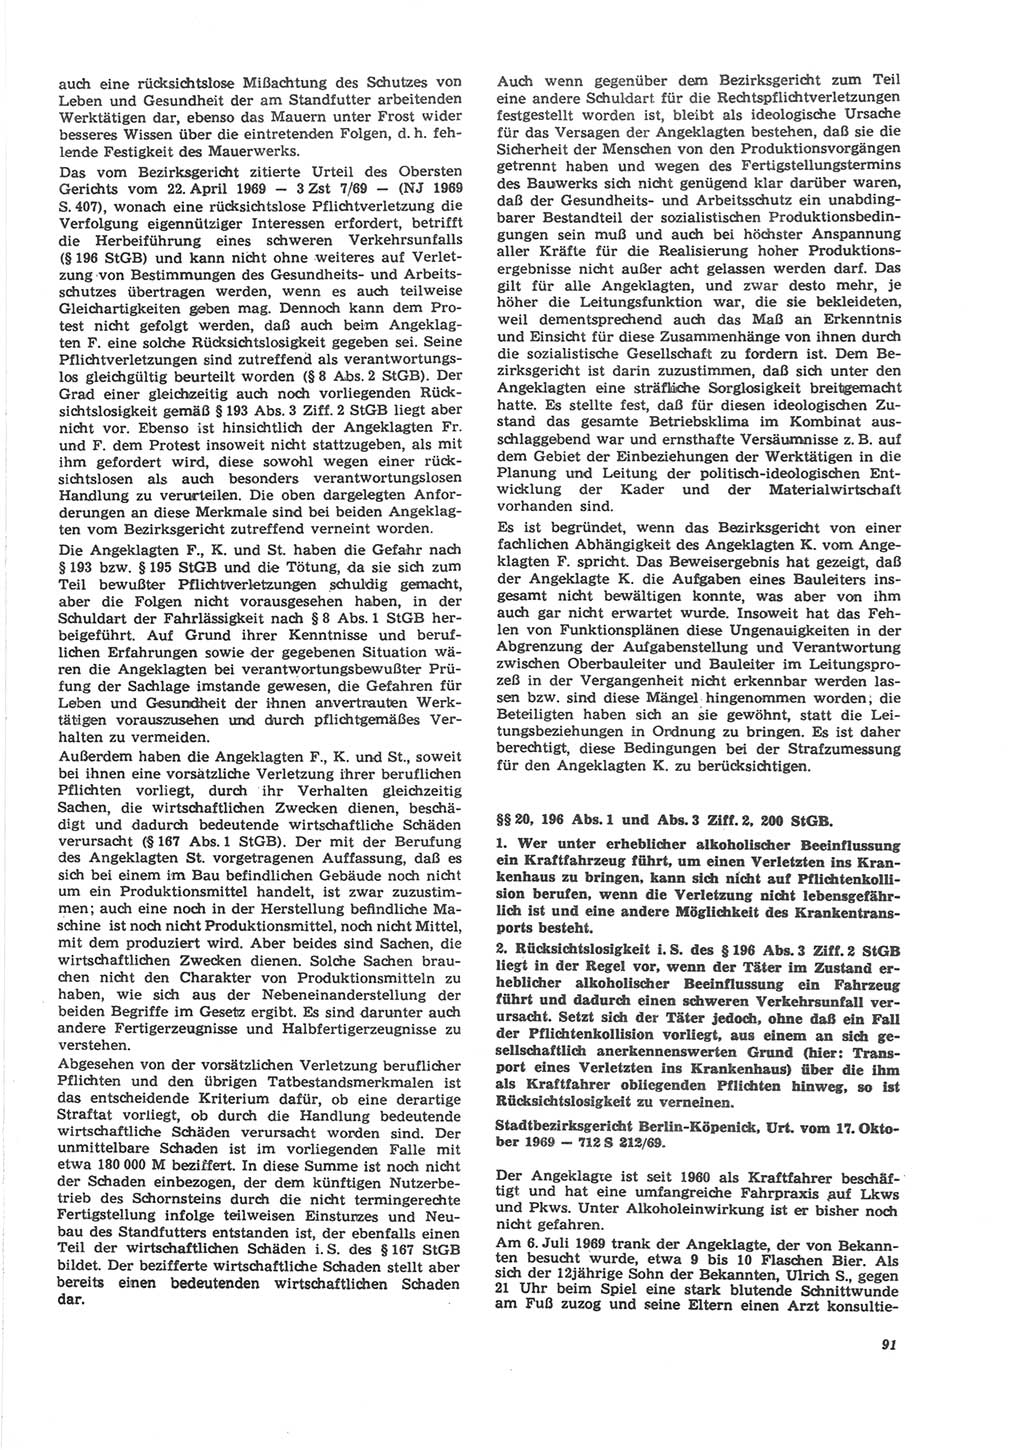 Neue Justiz (NJ), Zeitschrift für Recht und Rechtswissenschaft [Deutsche Demokratische Republik (DDR)], 24. Jahrgang 1970, Seite 91 (NJ DDR 1970, S. 91)